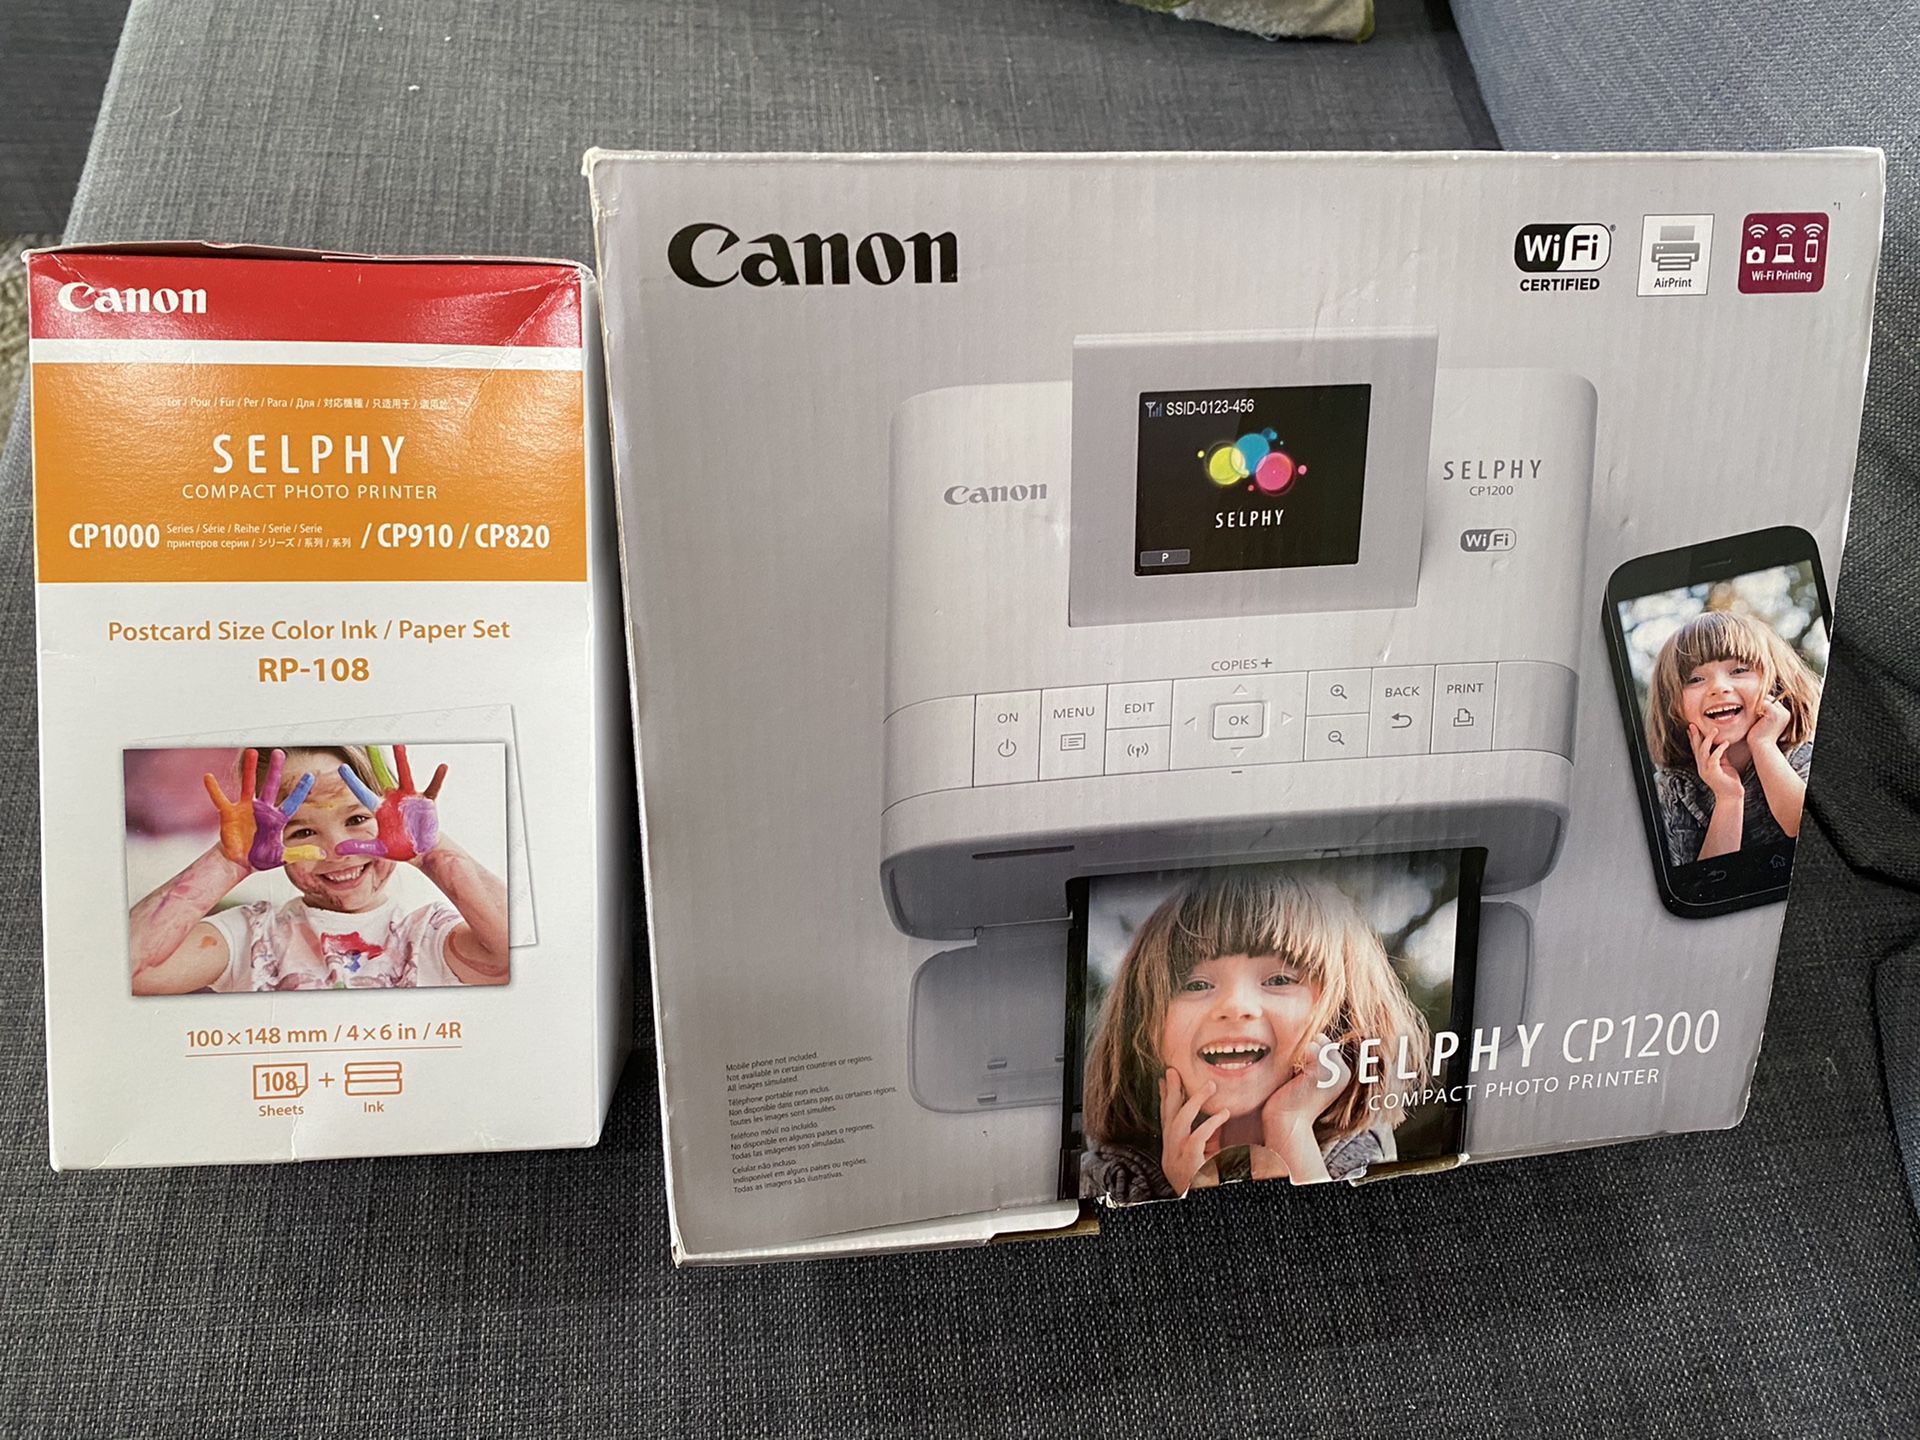 Canon Selphy CP1200 Photo printer